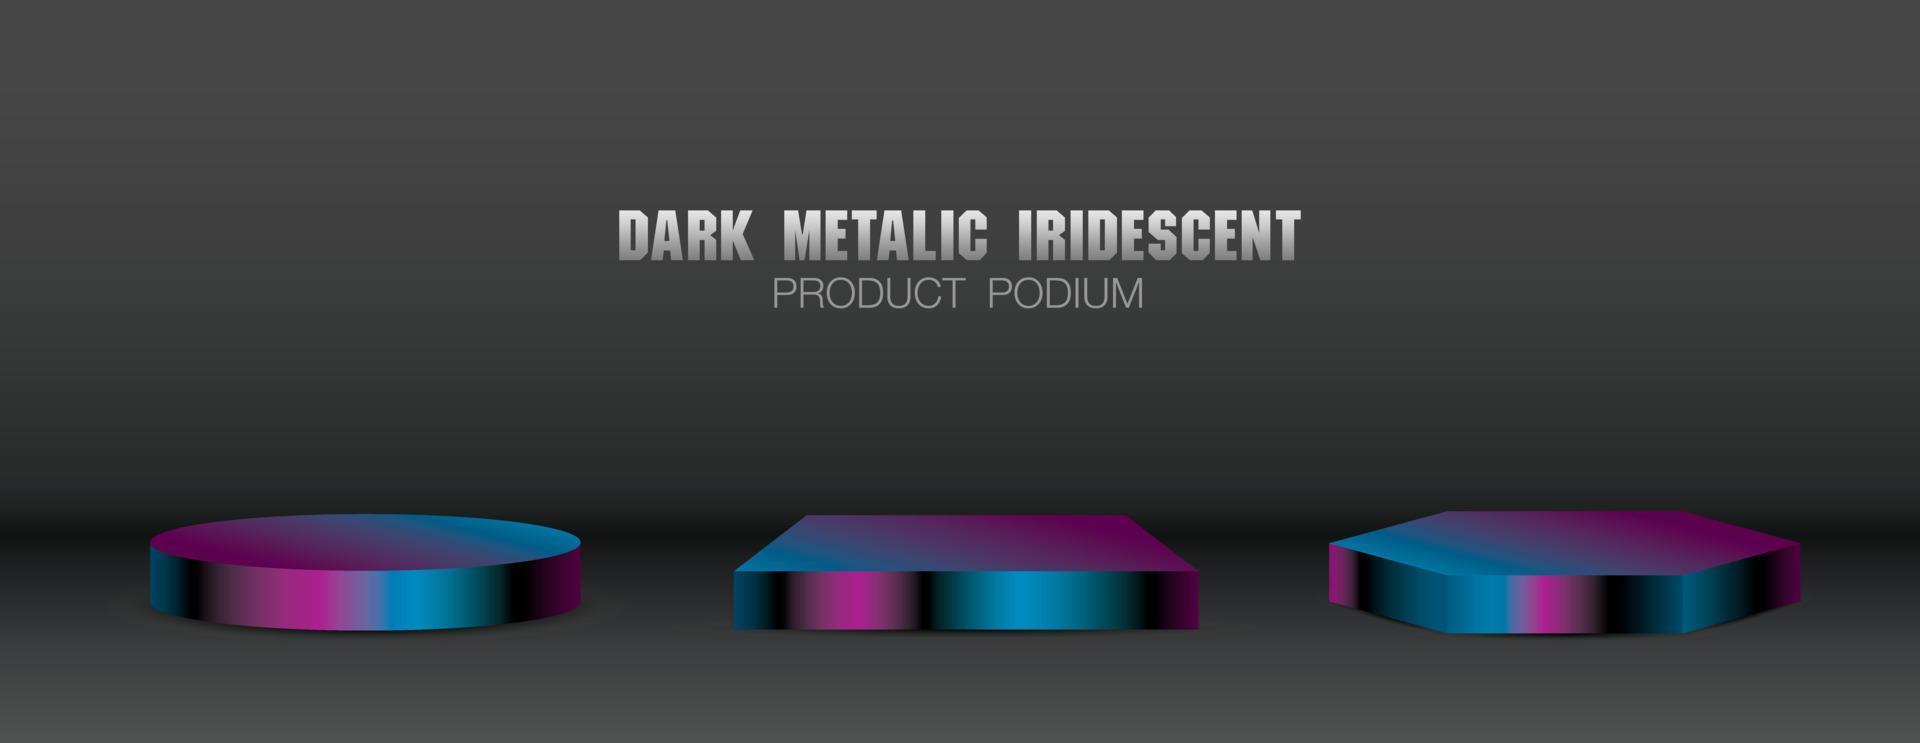 koele donkere metallic iriserende kleurverloop product display fase 3d illustratie vector collectie